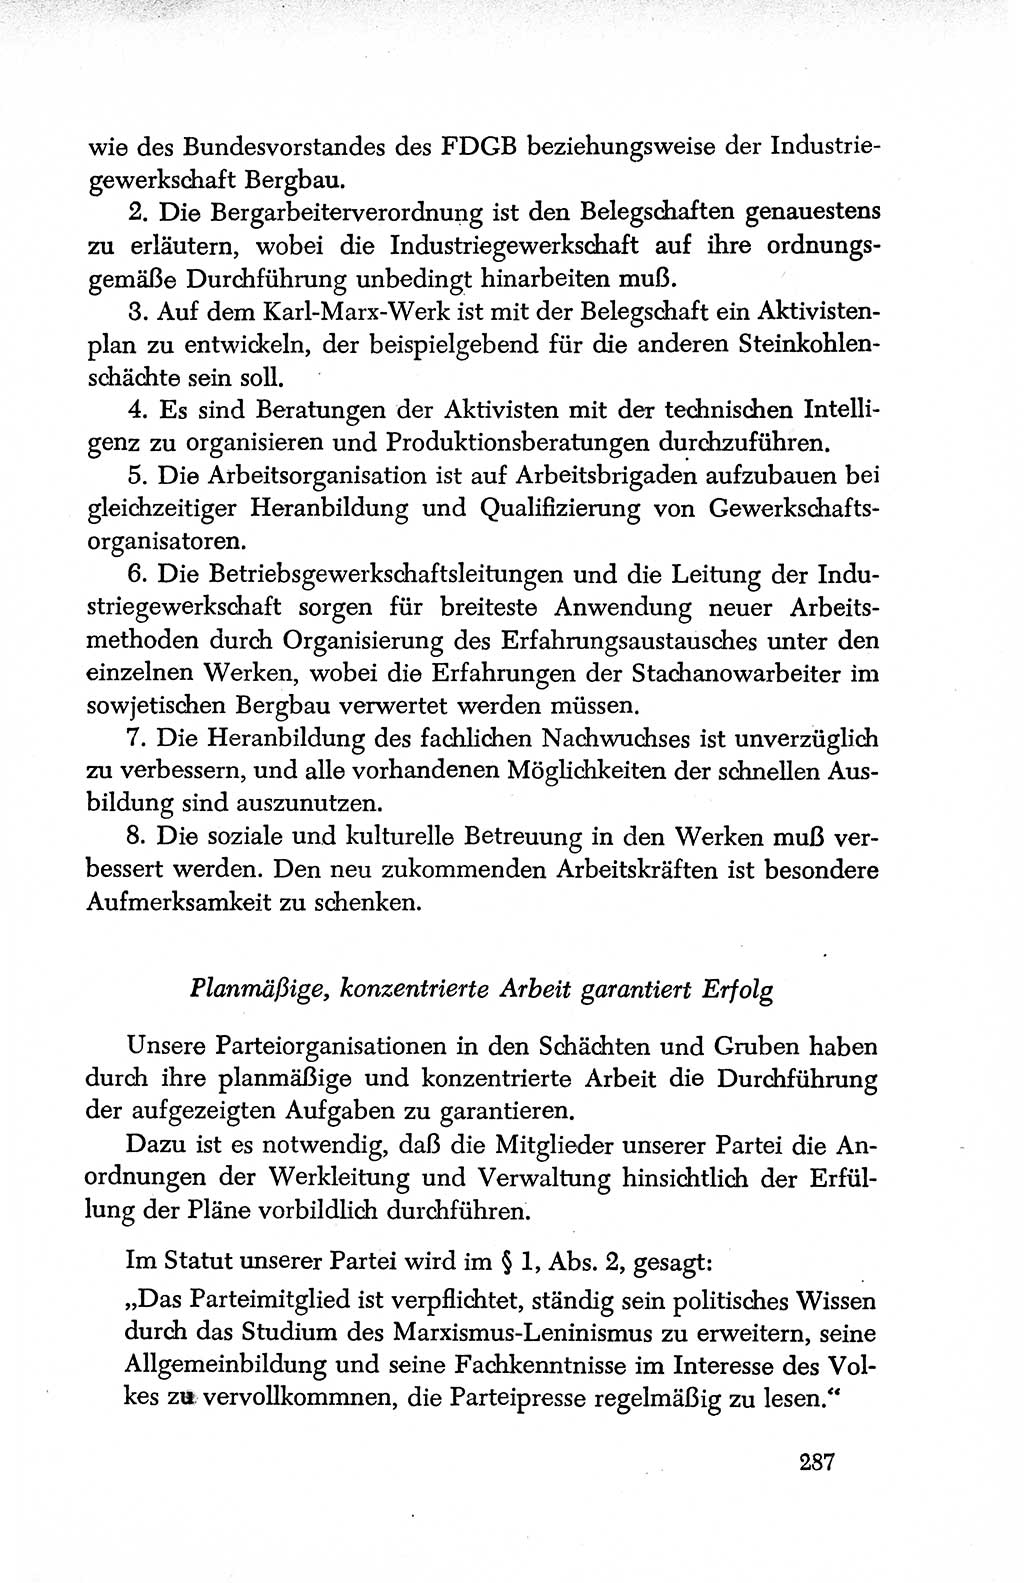 Dokumente der Sozialistischen Einheitspartei Deutschlands (SED) [Deutsche Demokratische Republik (DDR)] 1950-1952, Seite 287 (Dok. SED DDR 1950-1952, S. 287)